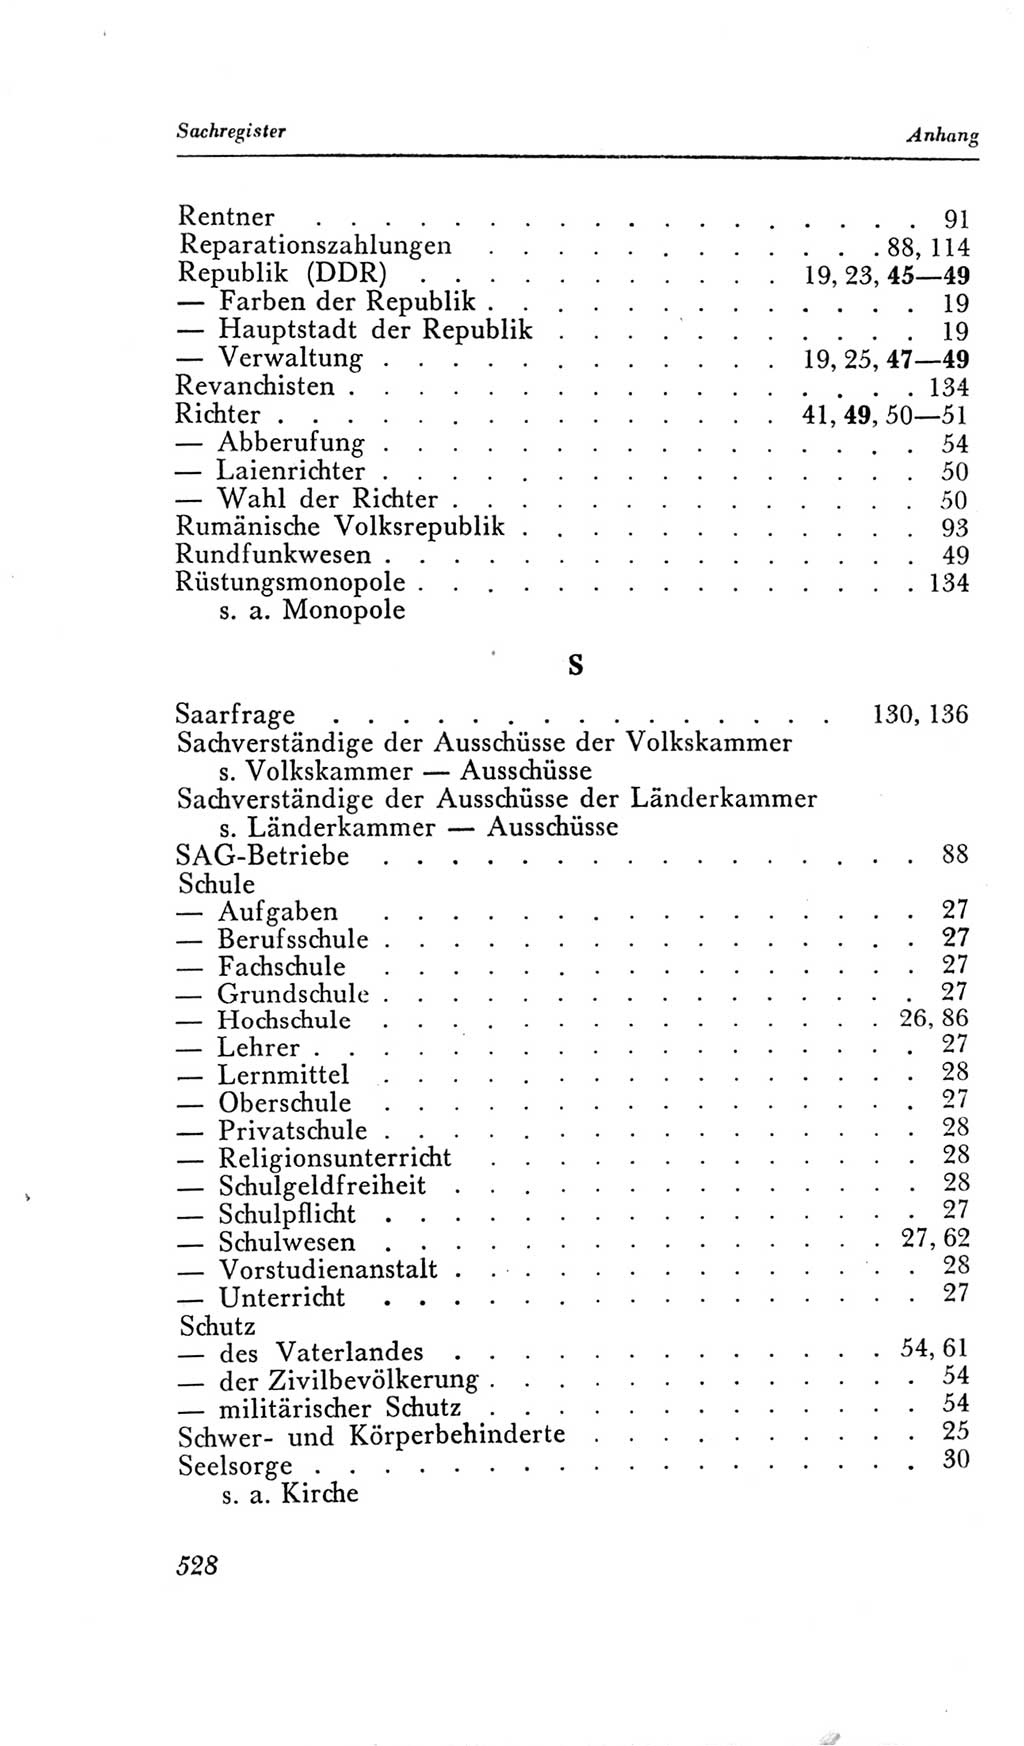 Handbuch der Volkskammer (VK) der Deutschen Demokratischen Republik (DDR), 2. Wahlperiode 1954-1958, Seite 528 (Hdb. VK. DDR, 2. WP. 1954-1958, S. 528)